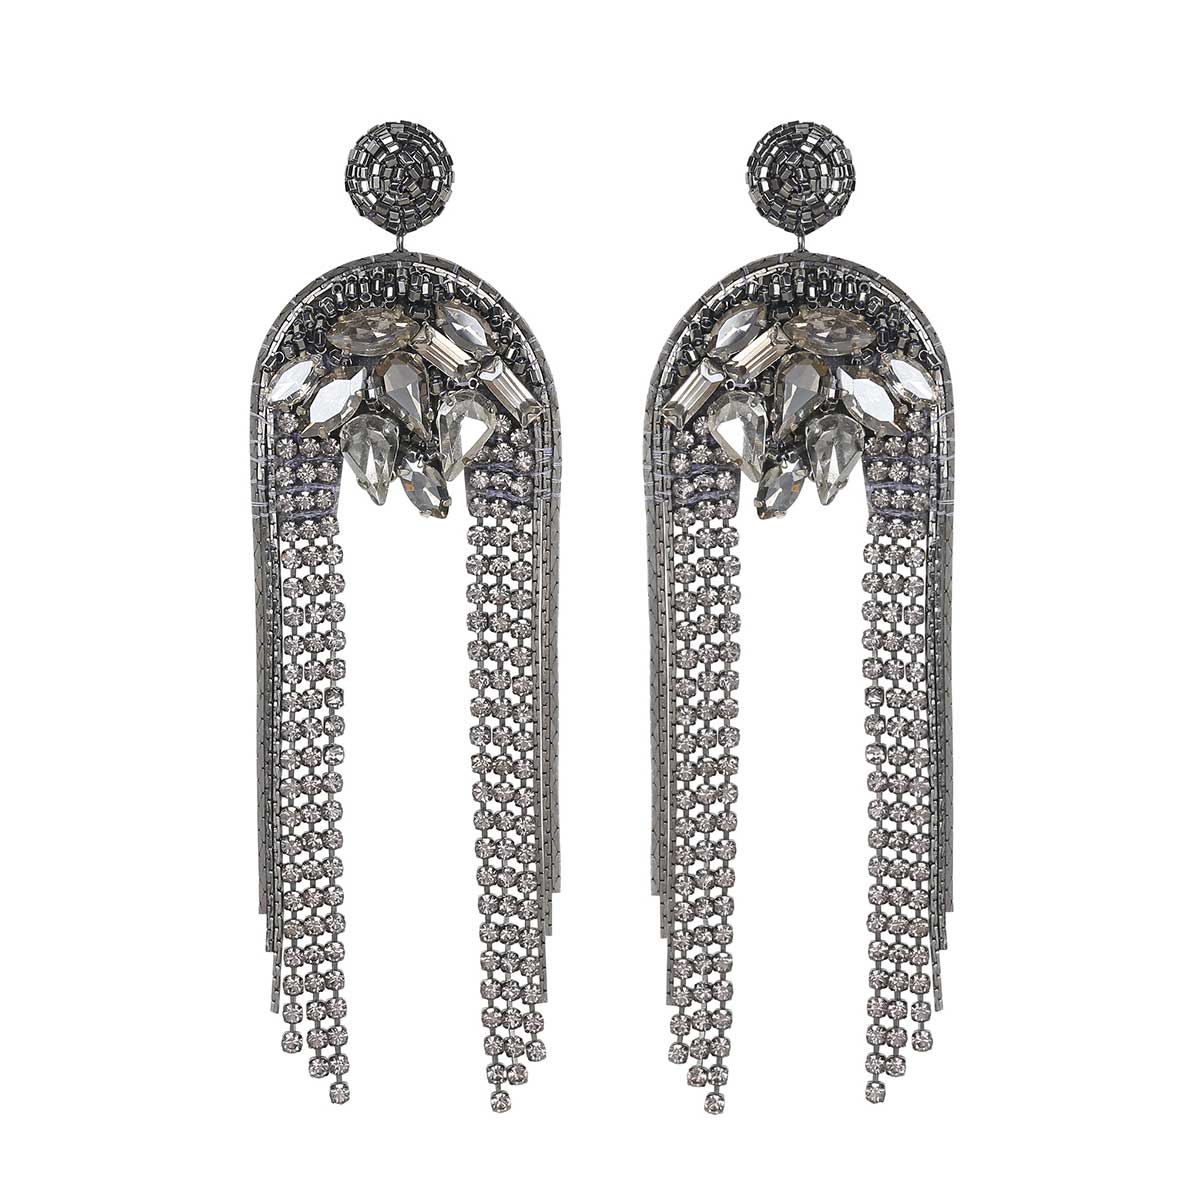 Deepa Gurnani Handmade Kylee Earrings in Gunmetal